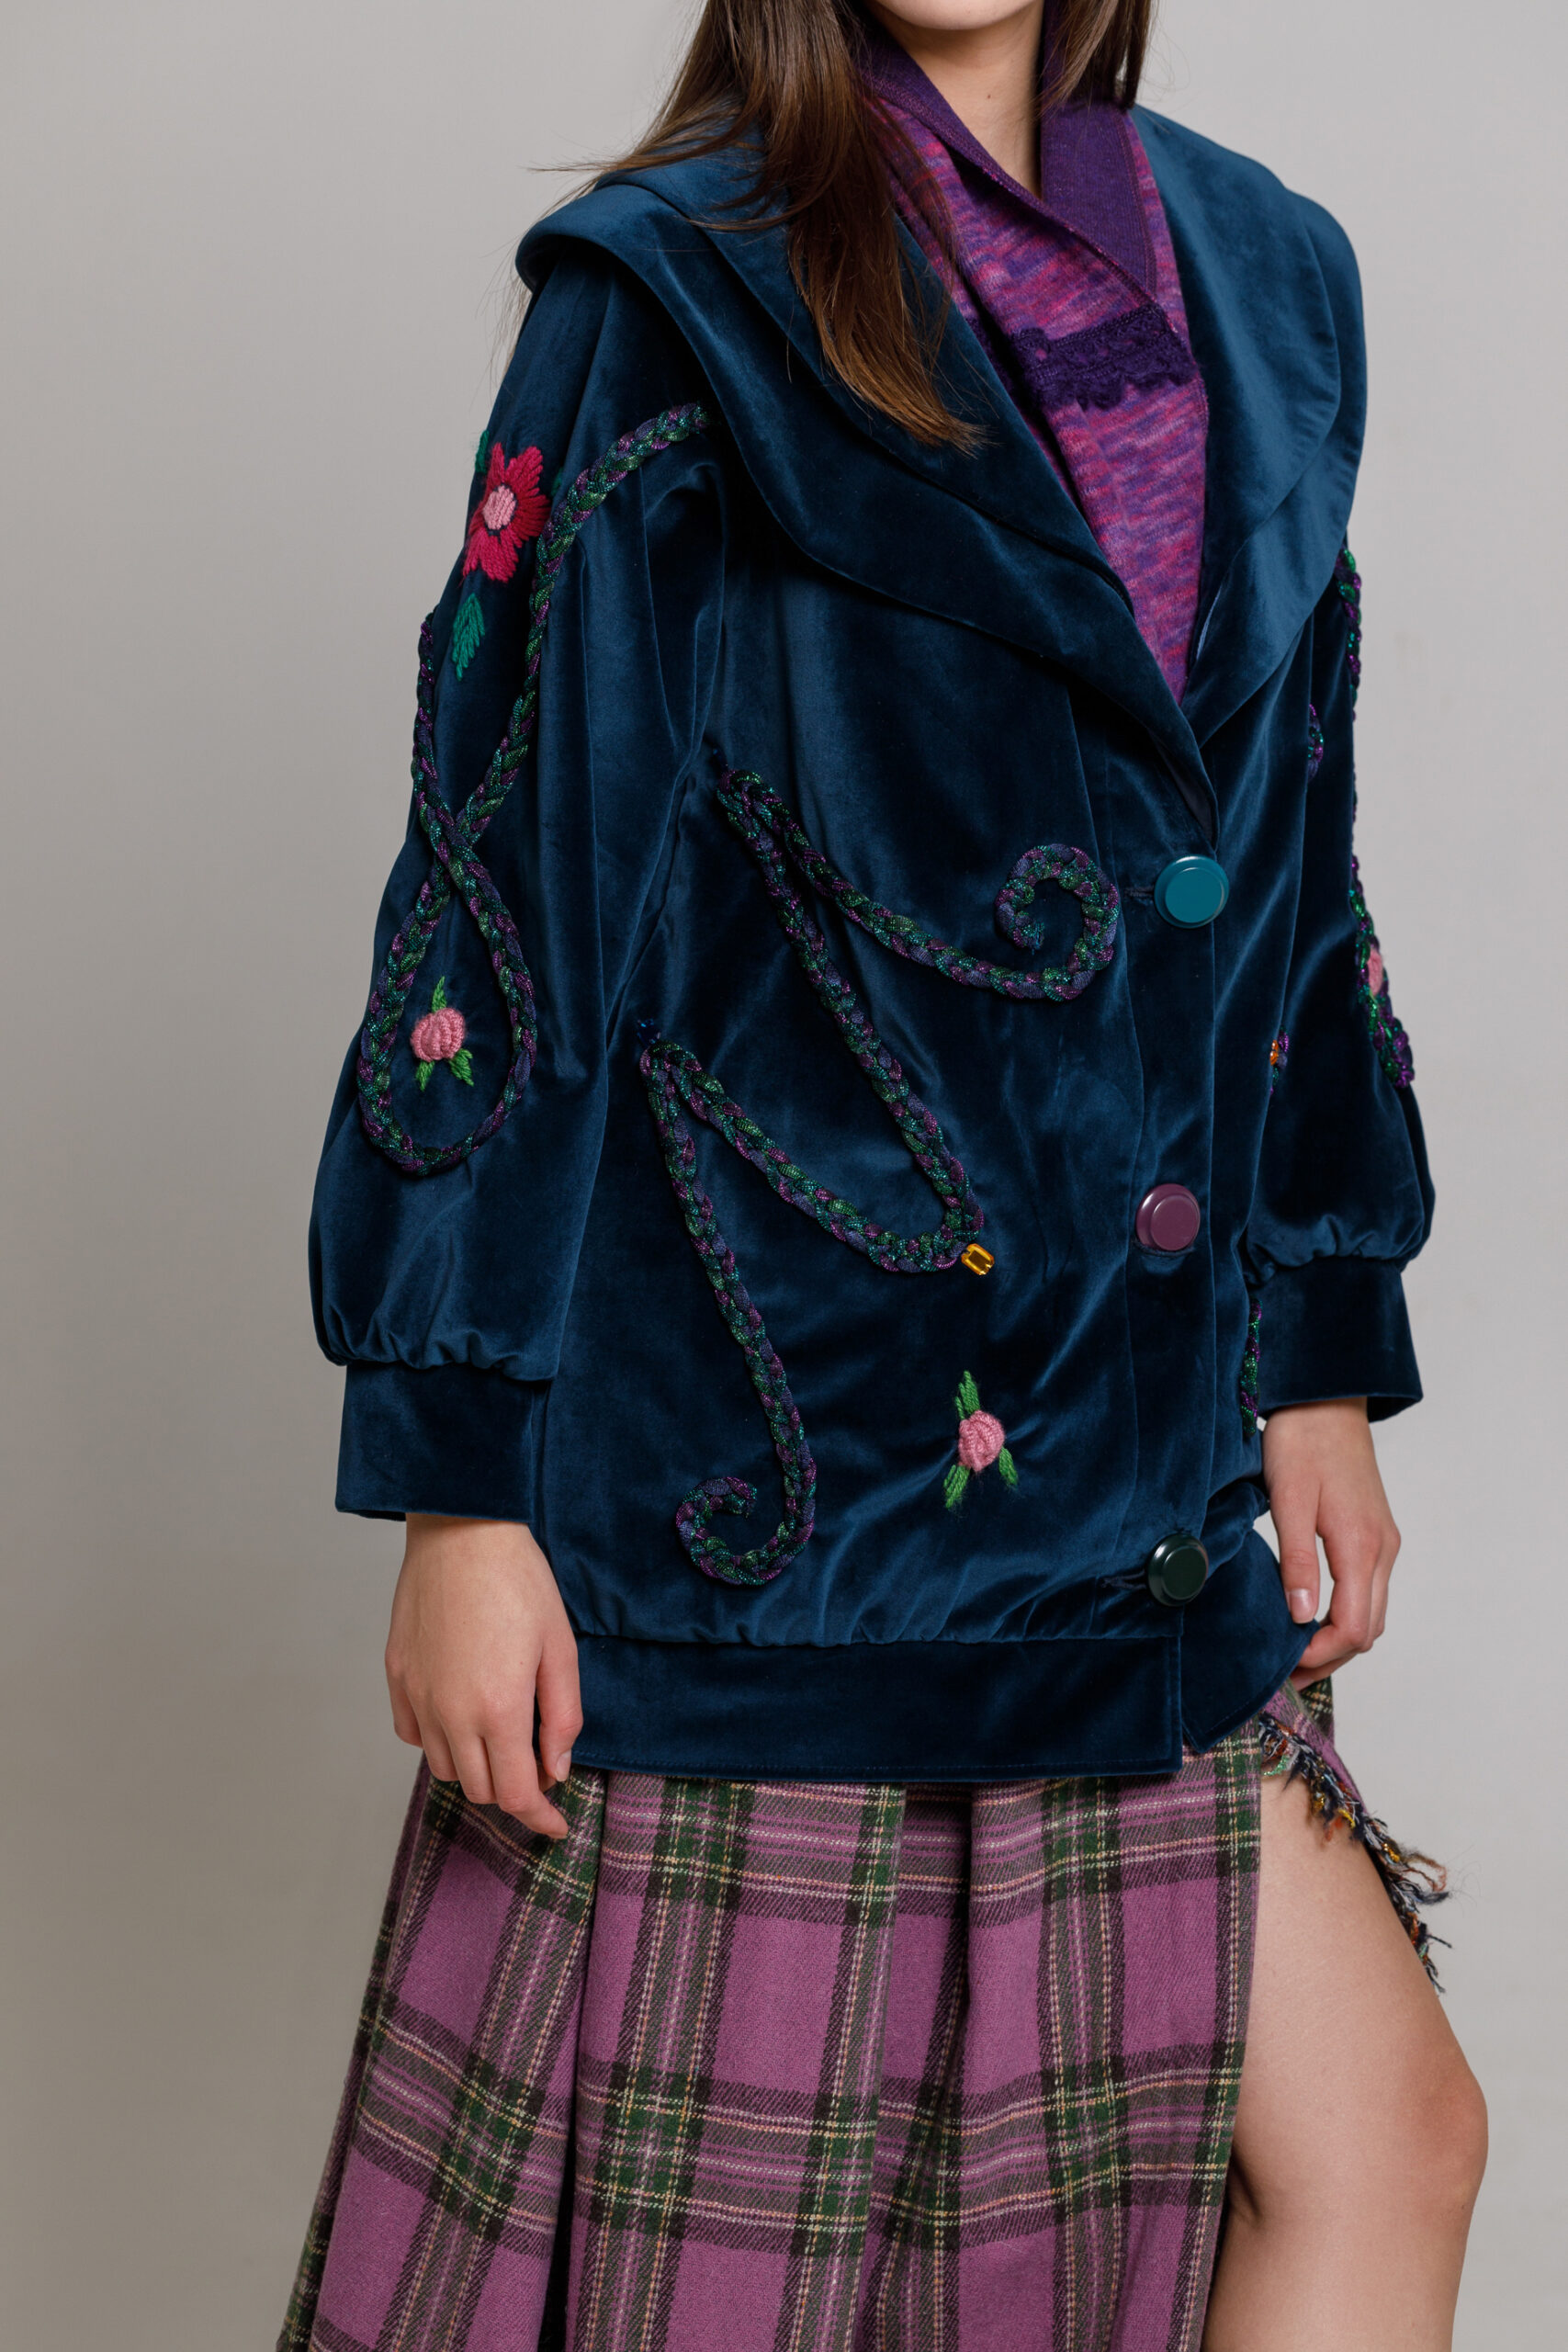 Jachetă ZINNIA elegantă din catifea bleumarin. Materiale naturale, design unicat, cu broderie si aplicatii handmade